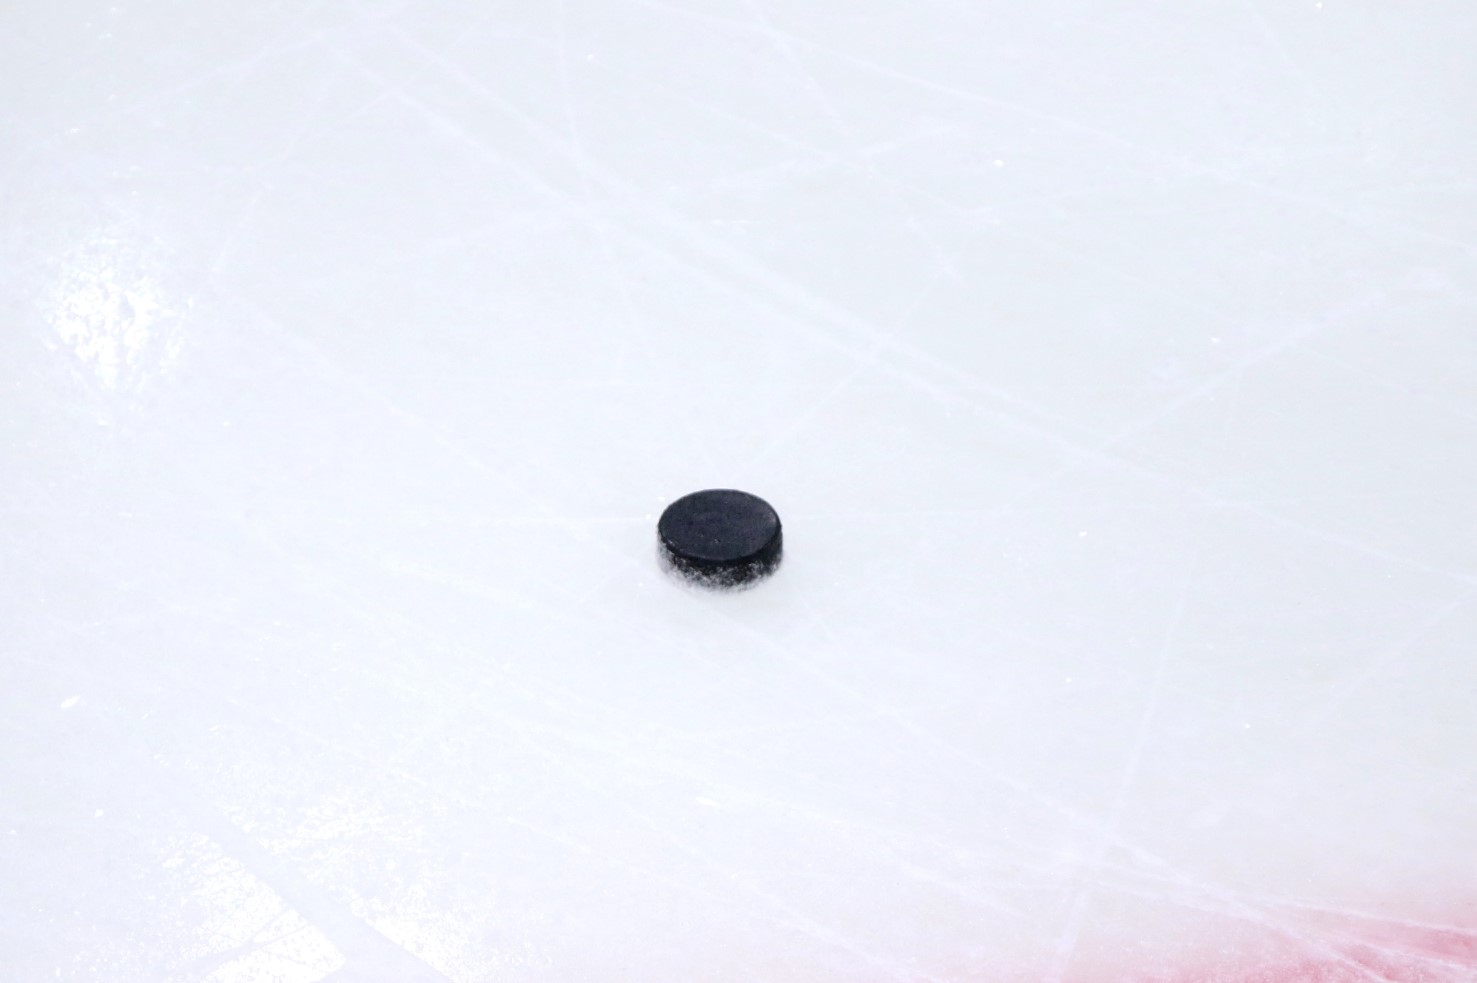 Сборная Канады в четвёртый раз подряд сумела пробиться в финал чемпионата мира по хоккею